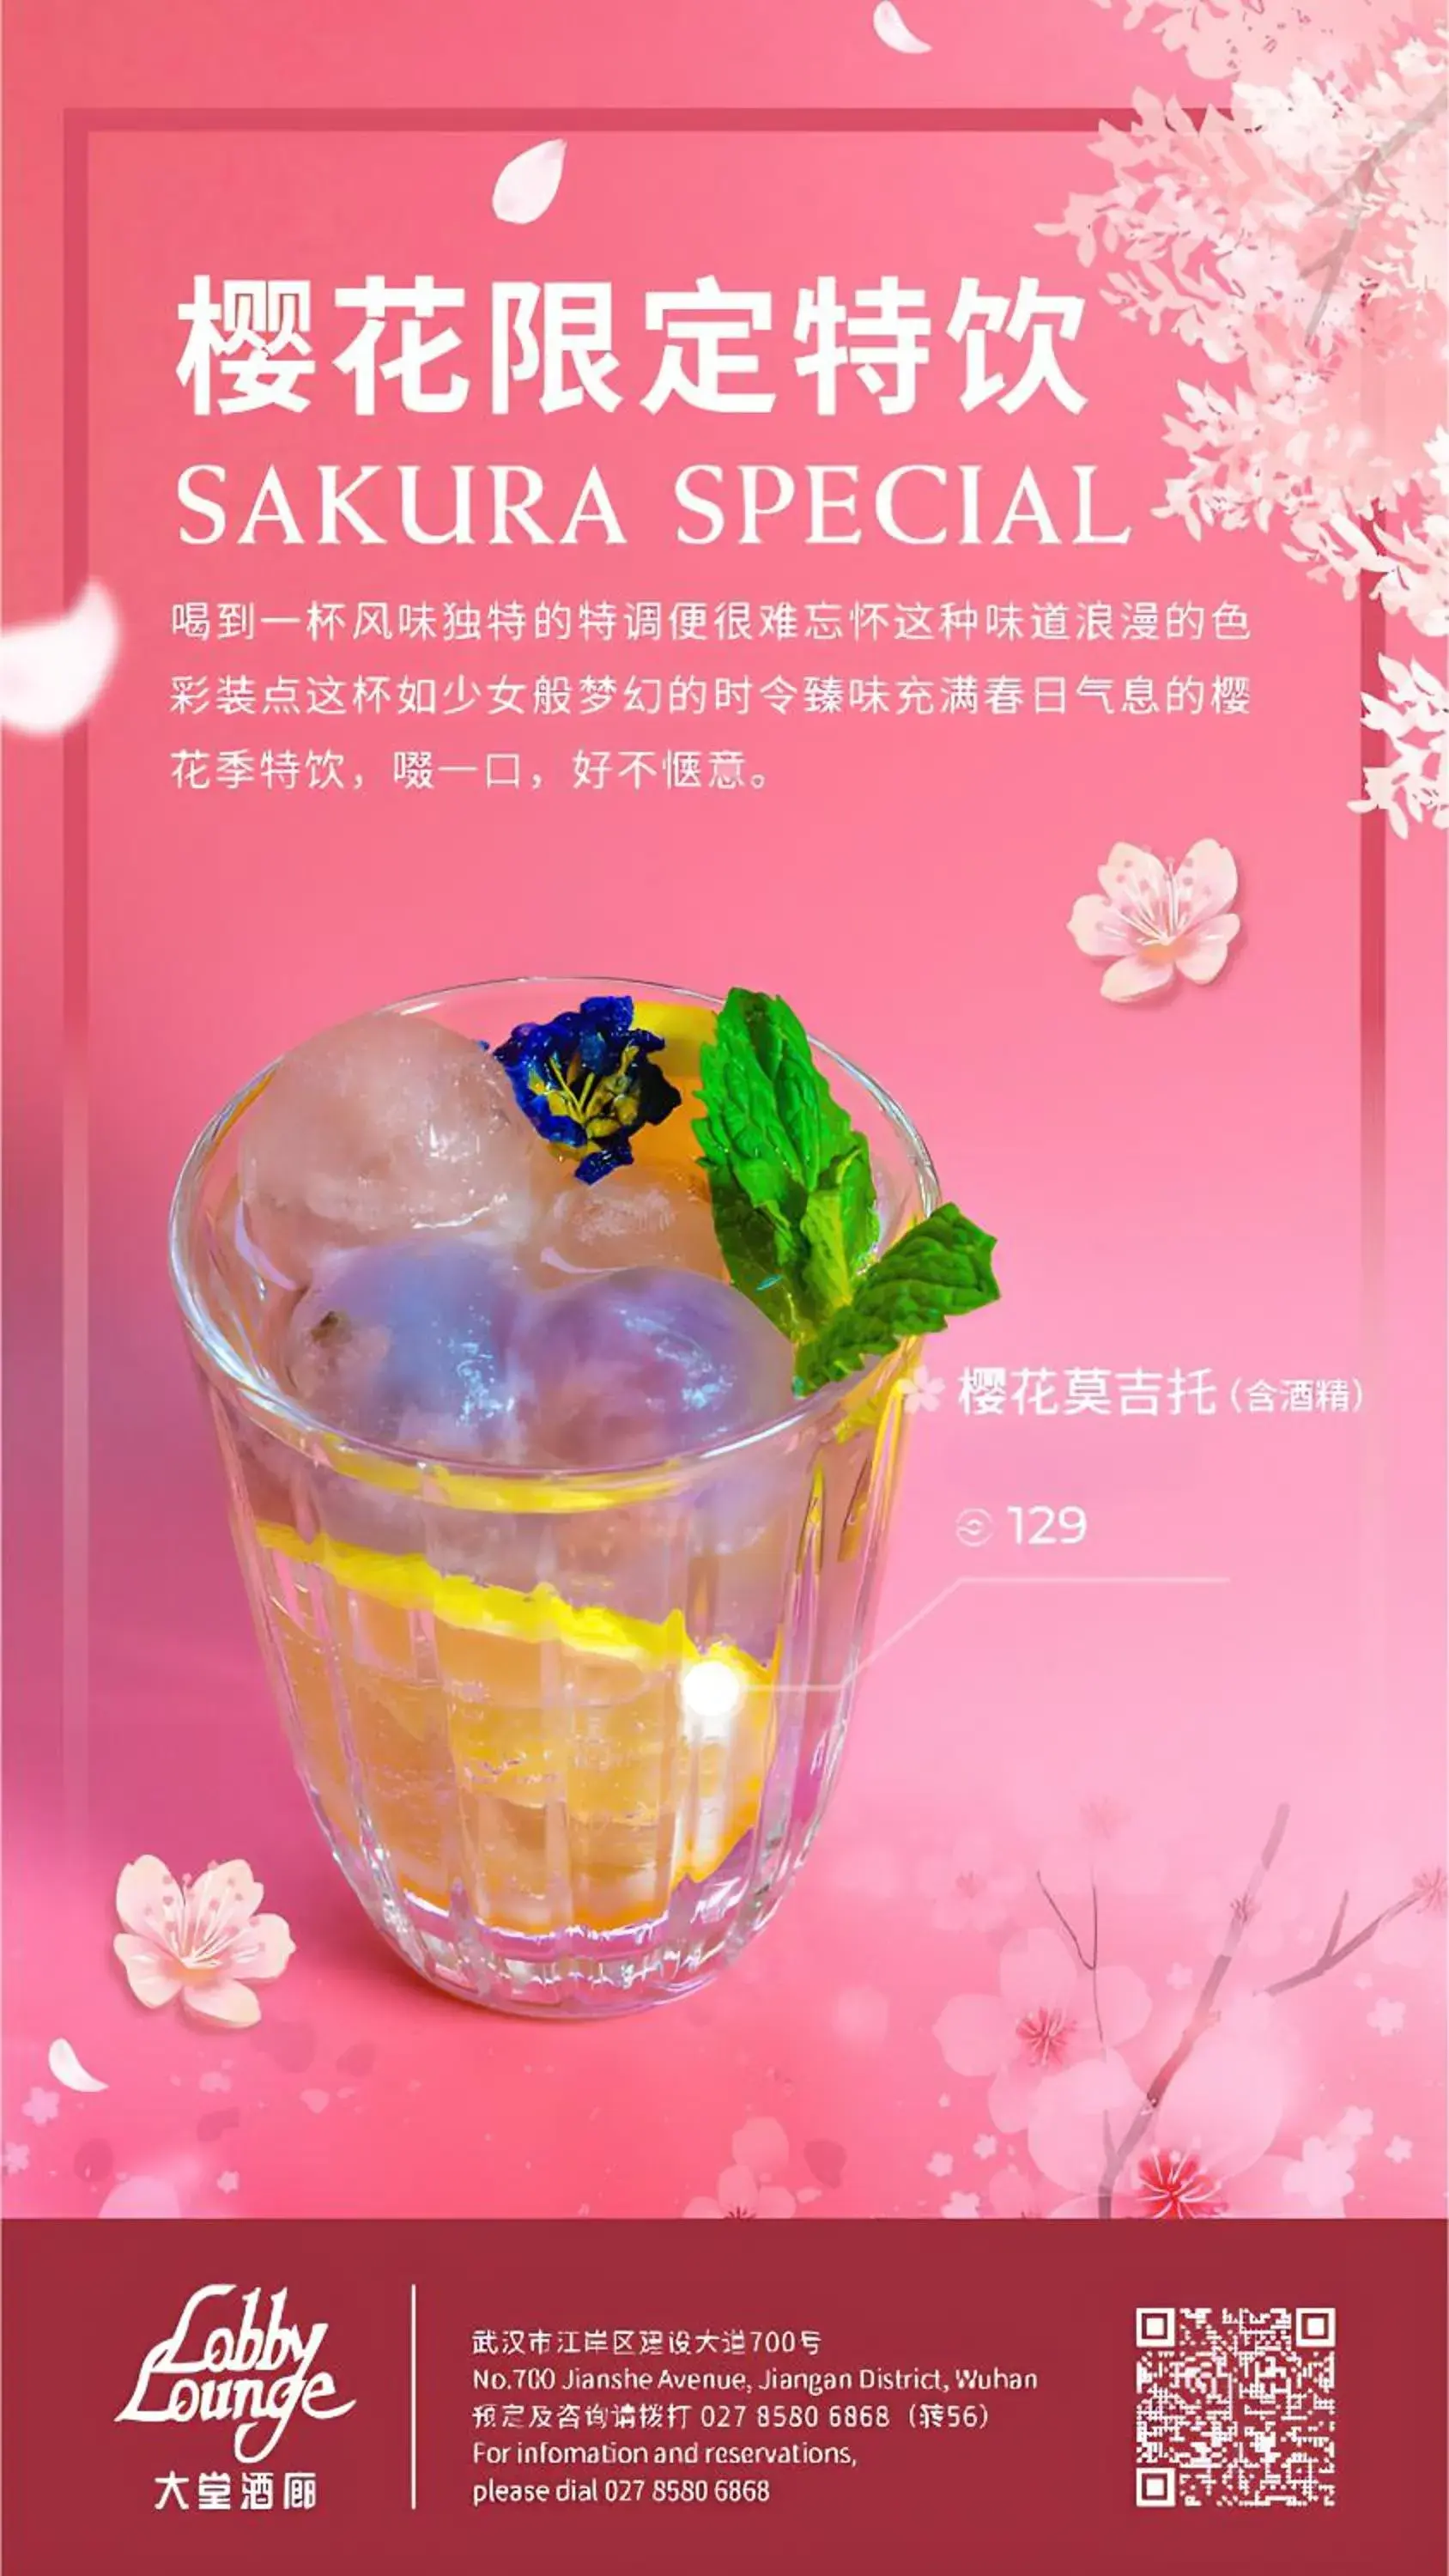 Food and drinks in Shangri-La Hotel, Wuhan